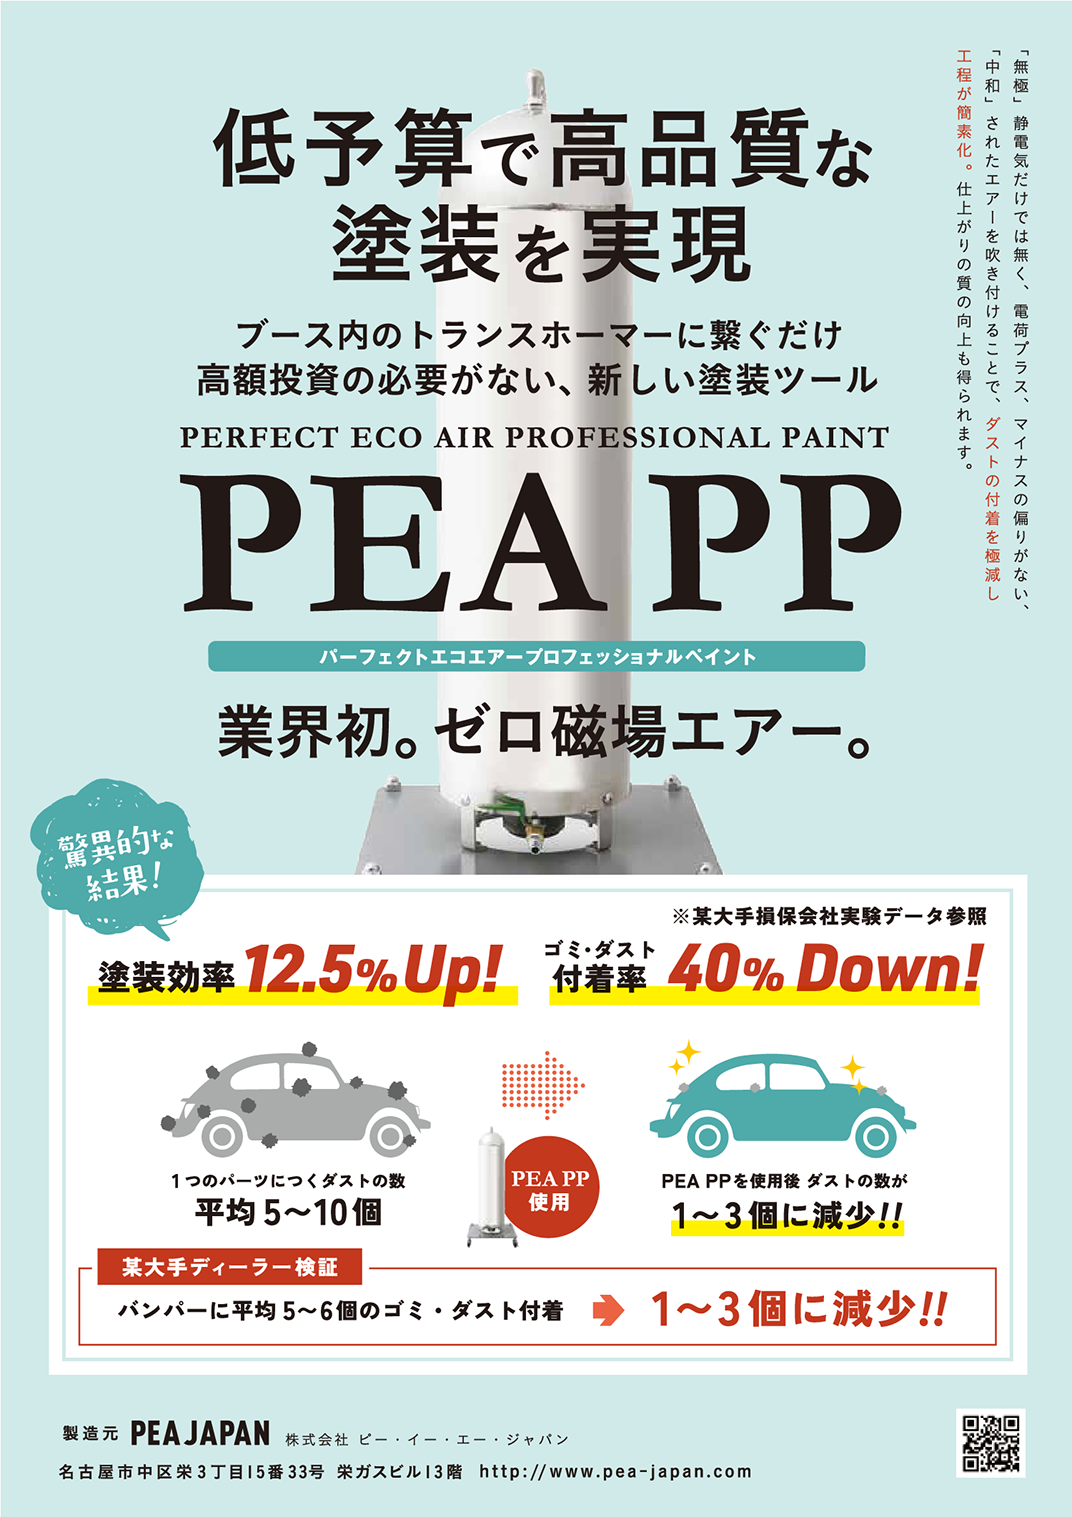 PEA PP | プロフェッショナルペイント